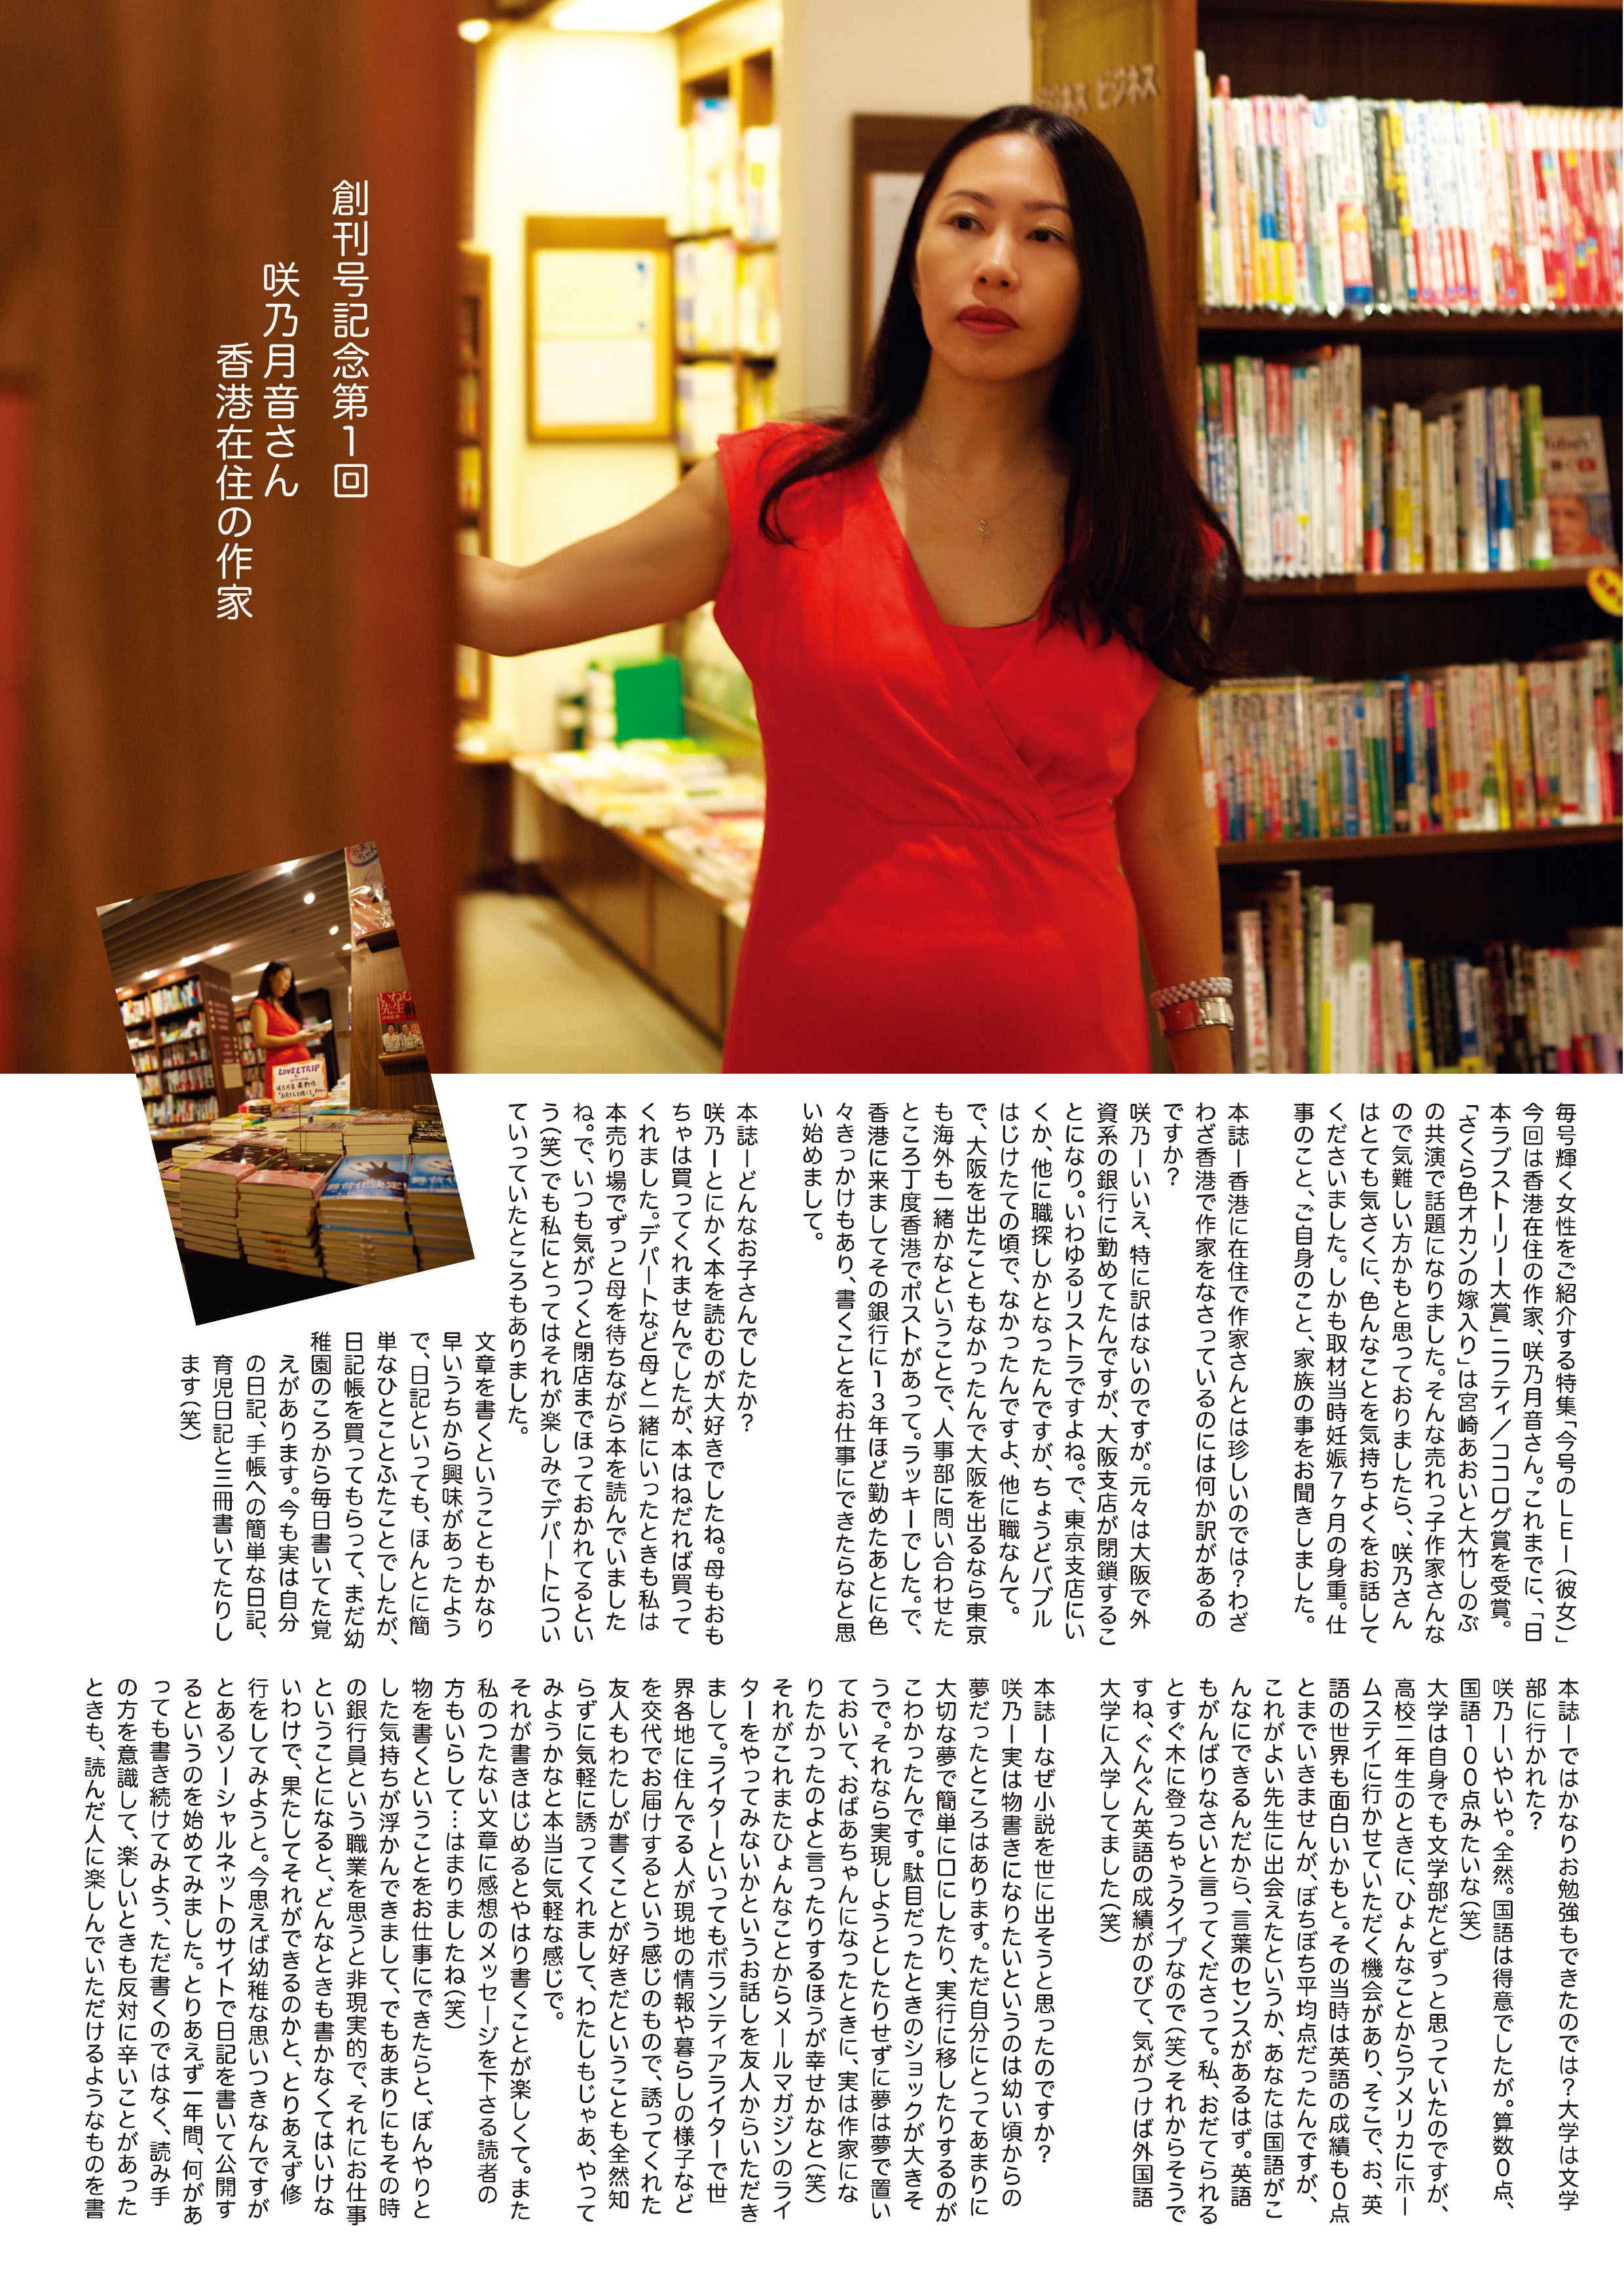 Hong Kong LEI vol.1 digital.pdf-3